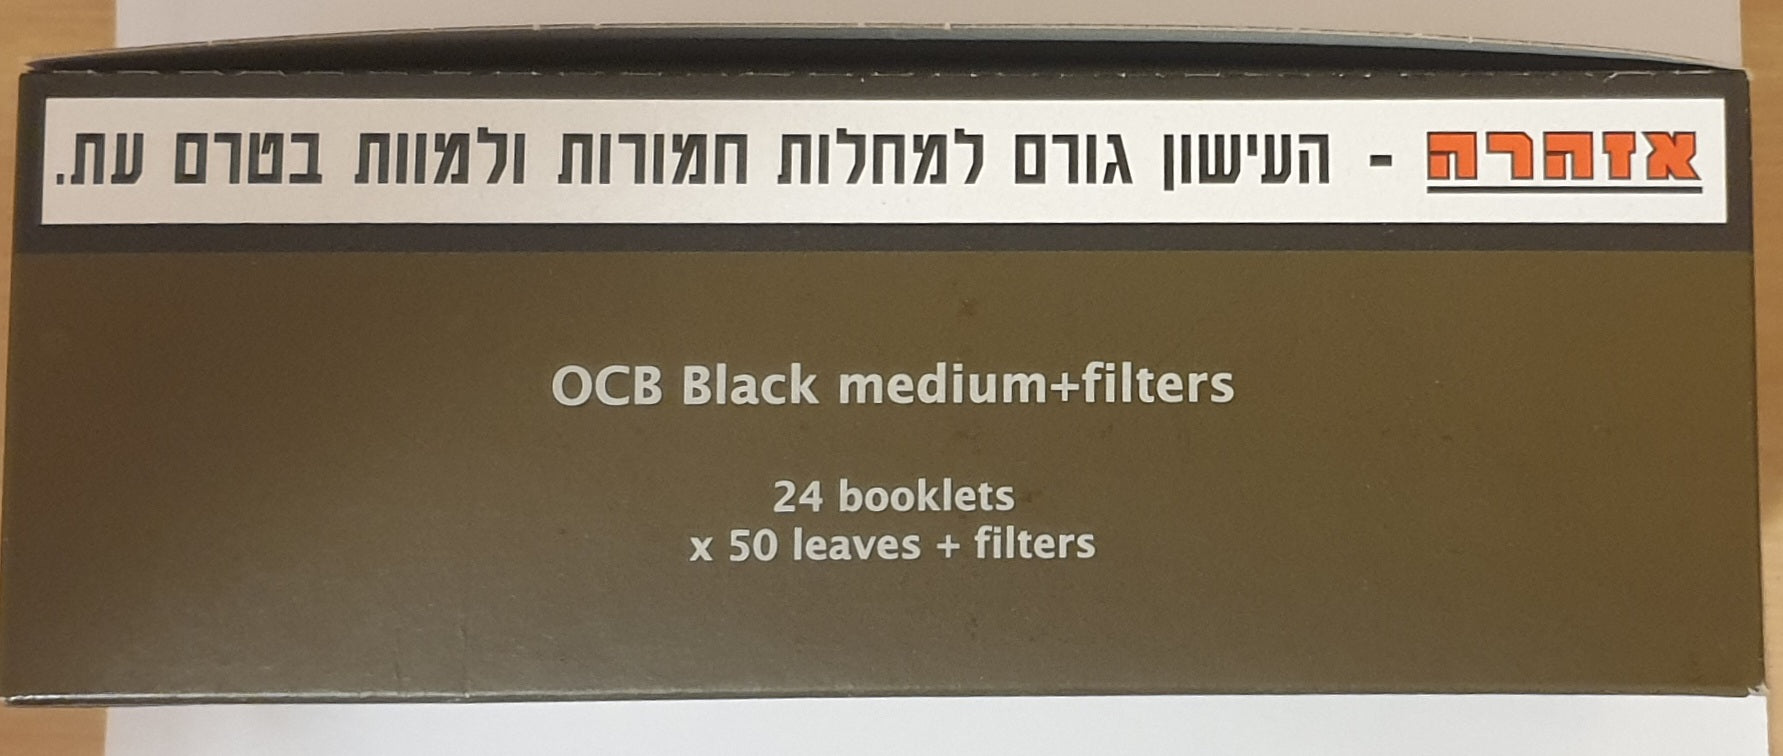 Cahier filtres OCB carton x 50